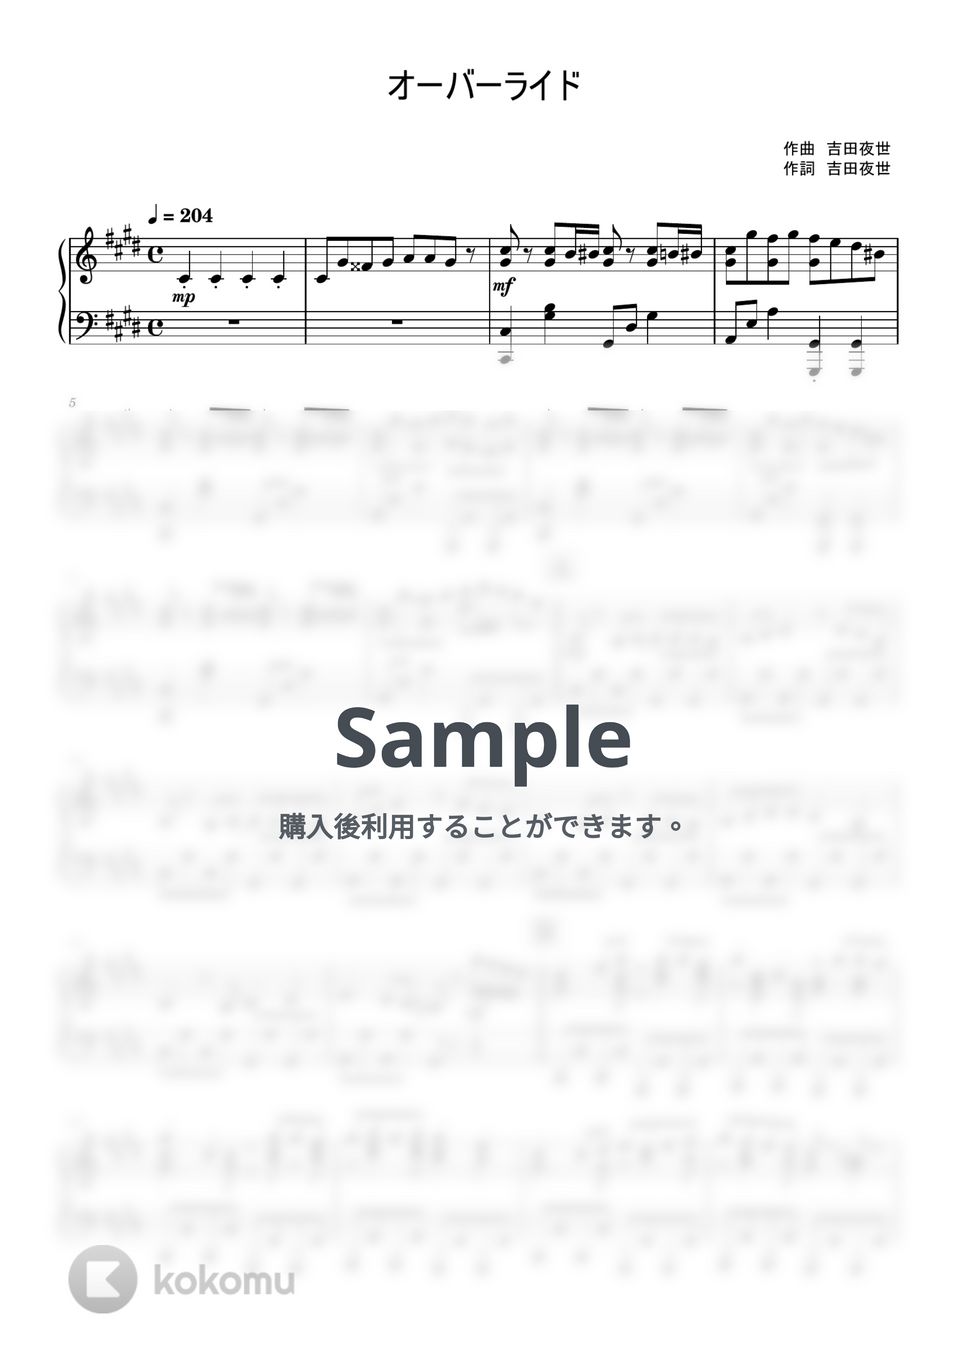 吉田夜世 - オーバーライド (ピアノソロ / 上級) by xxF3_ixx